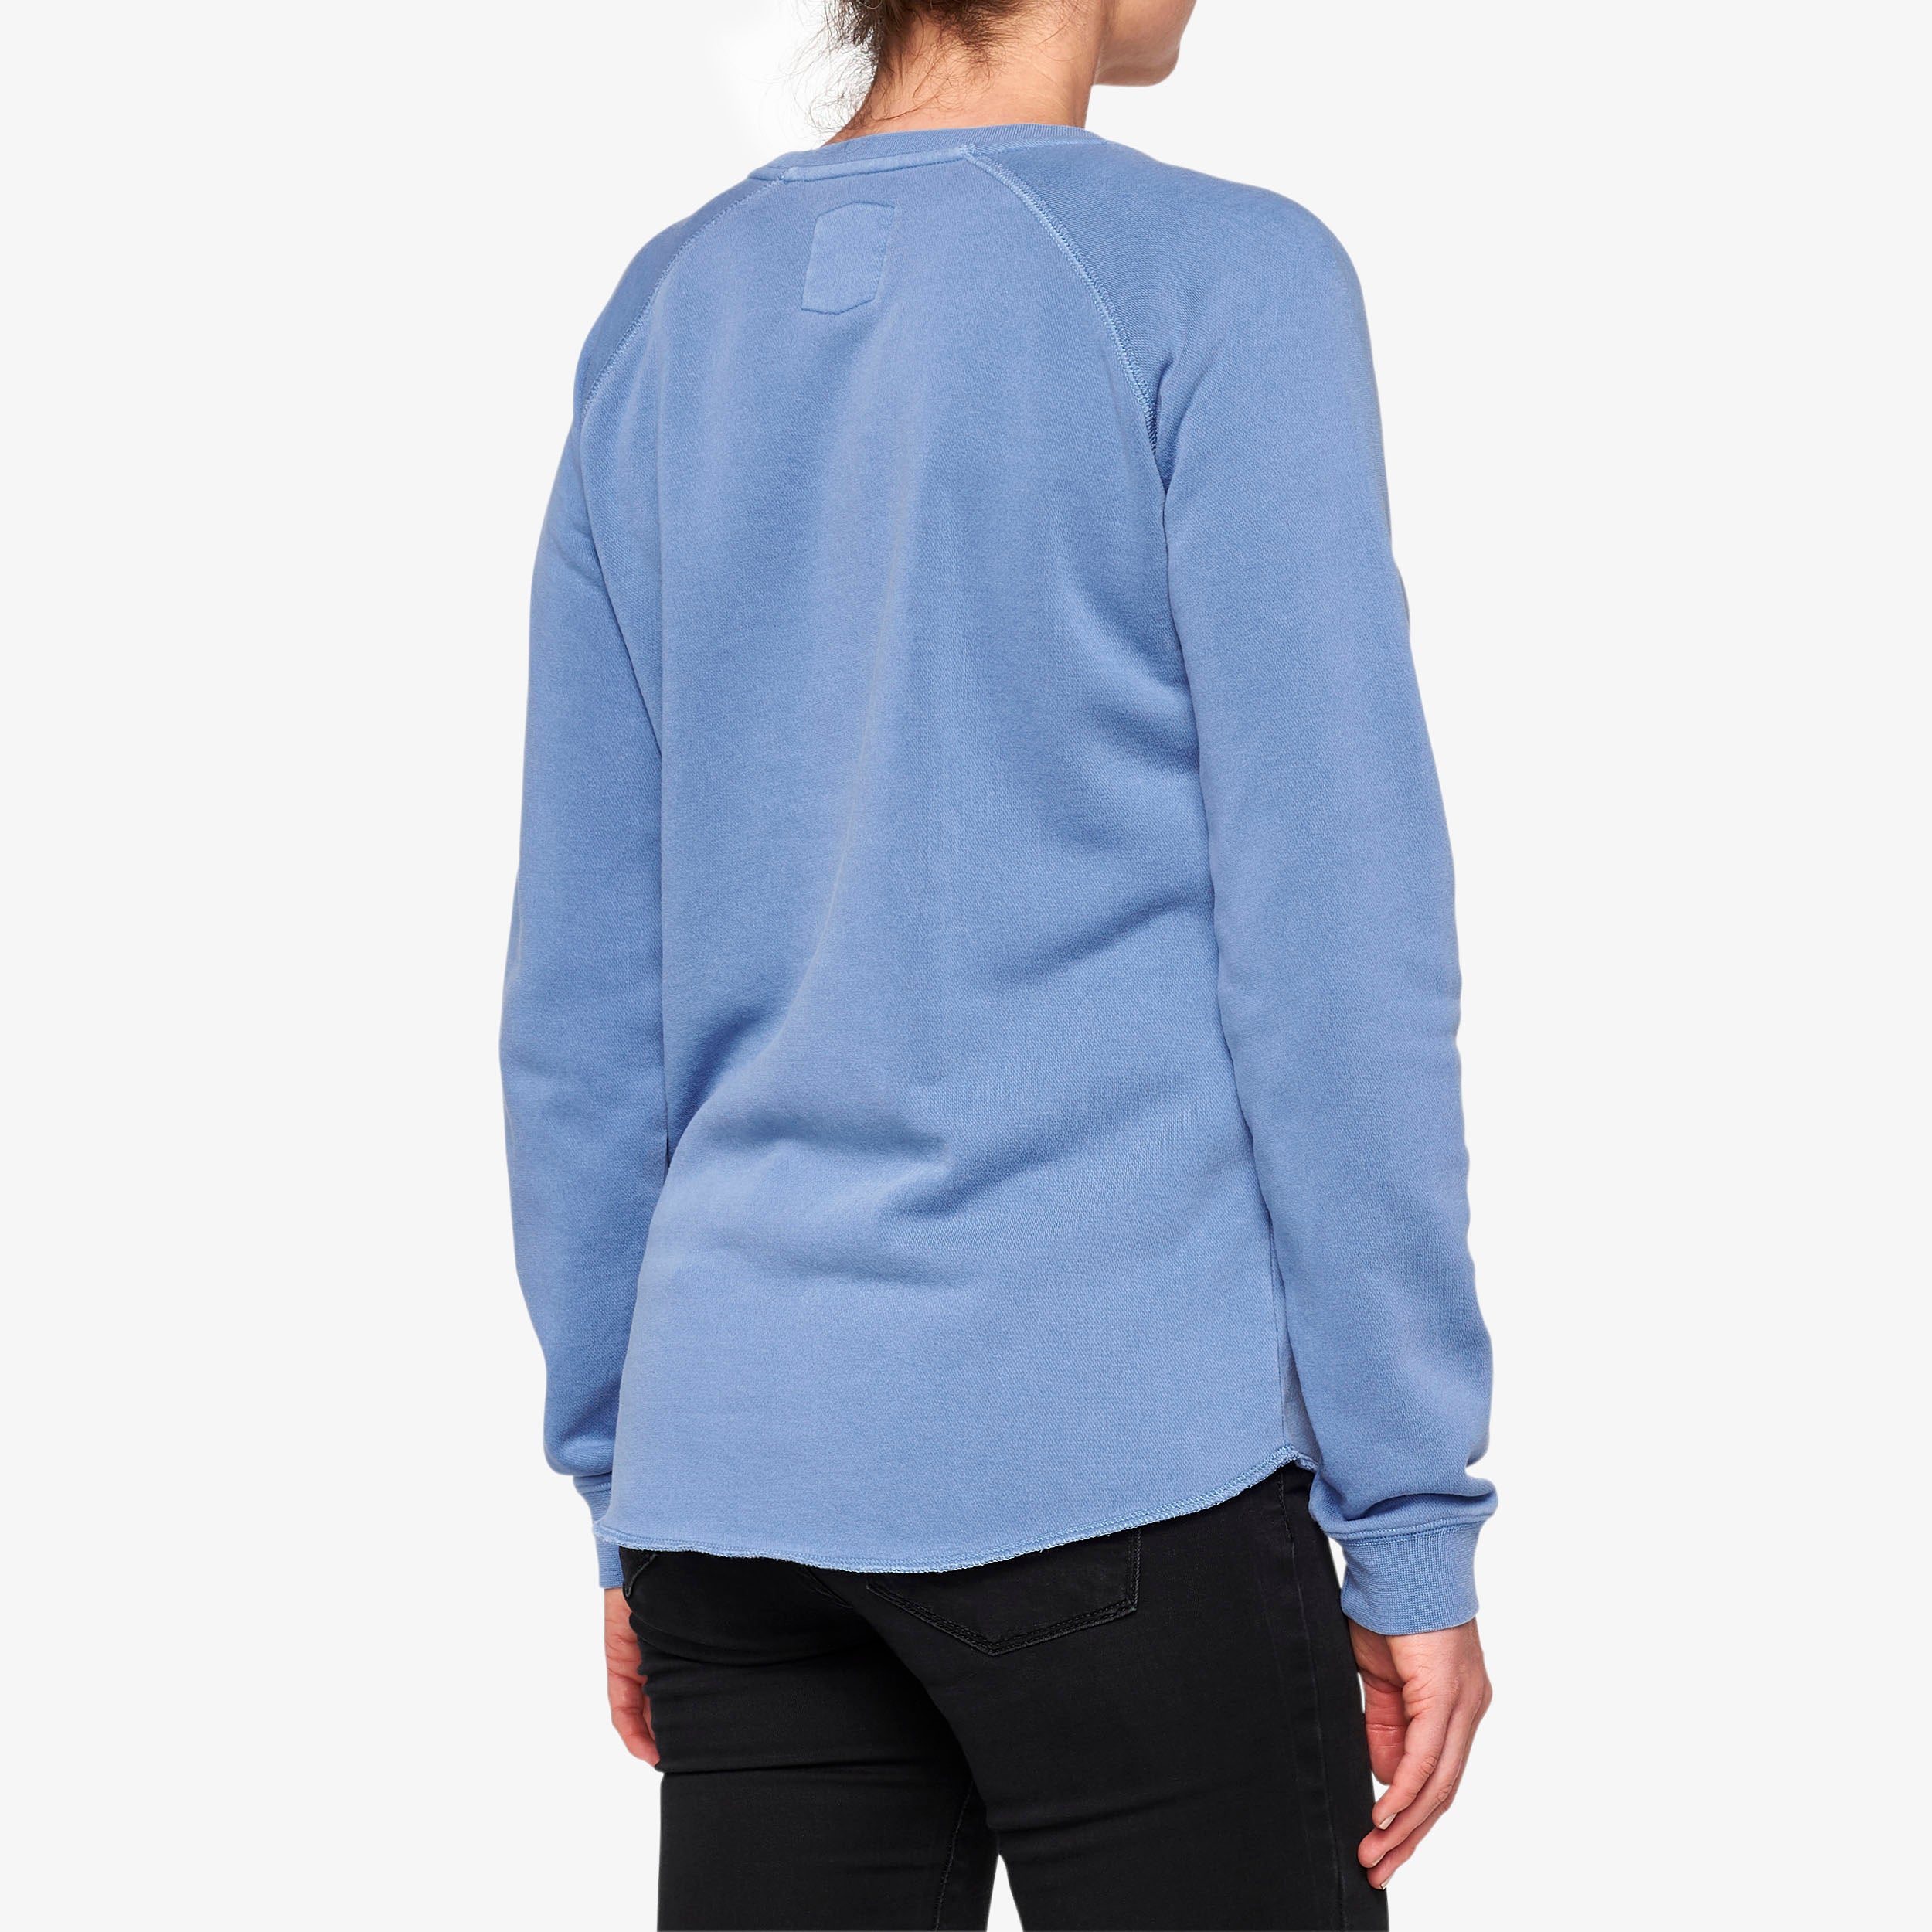 THORUNN Women's Pullover Crewneck Fleece Blue